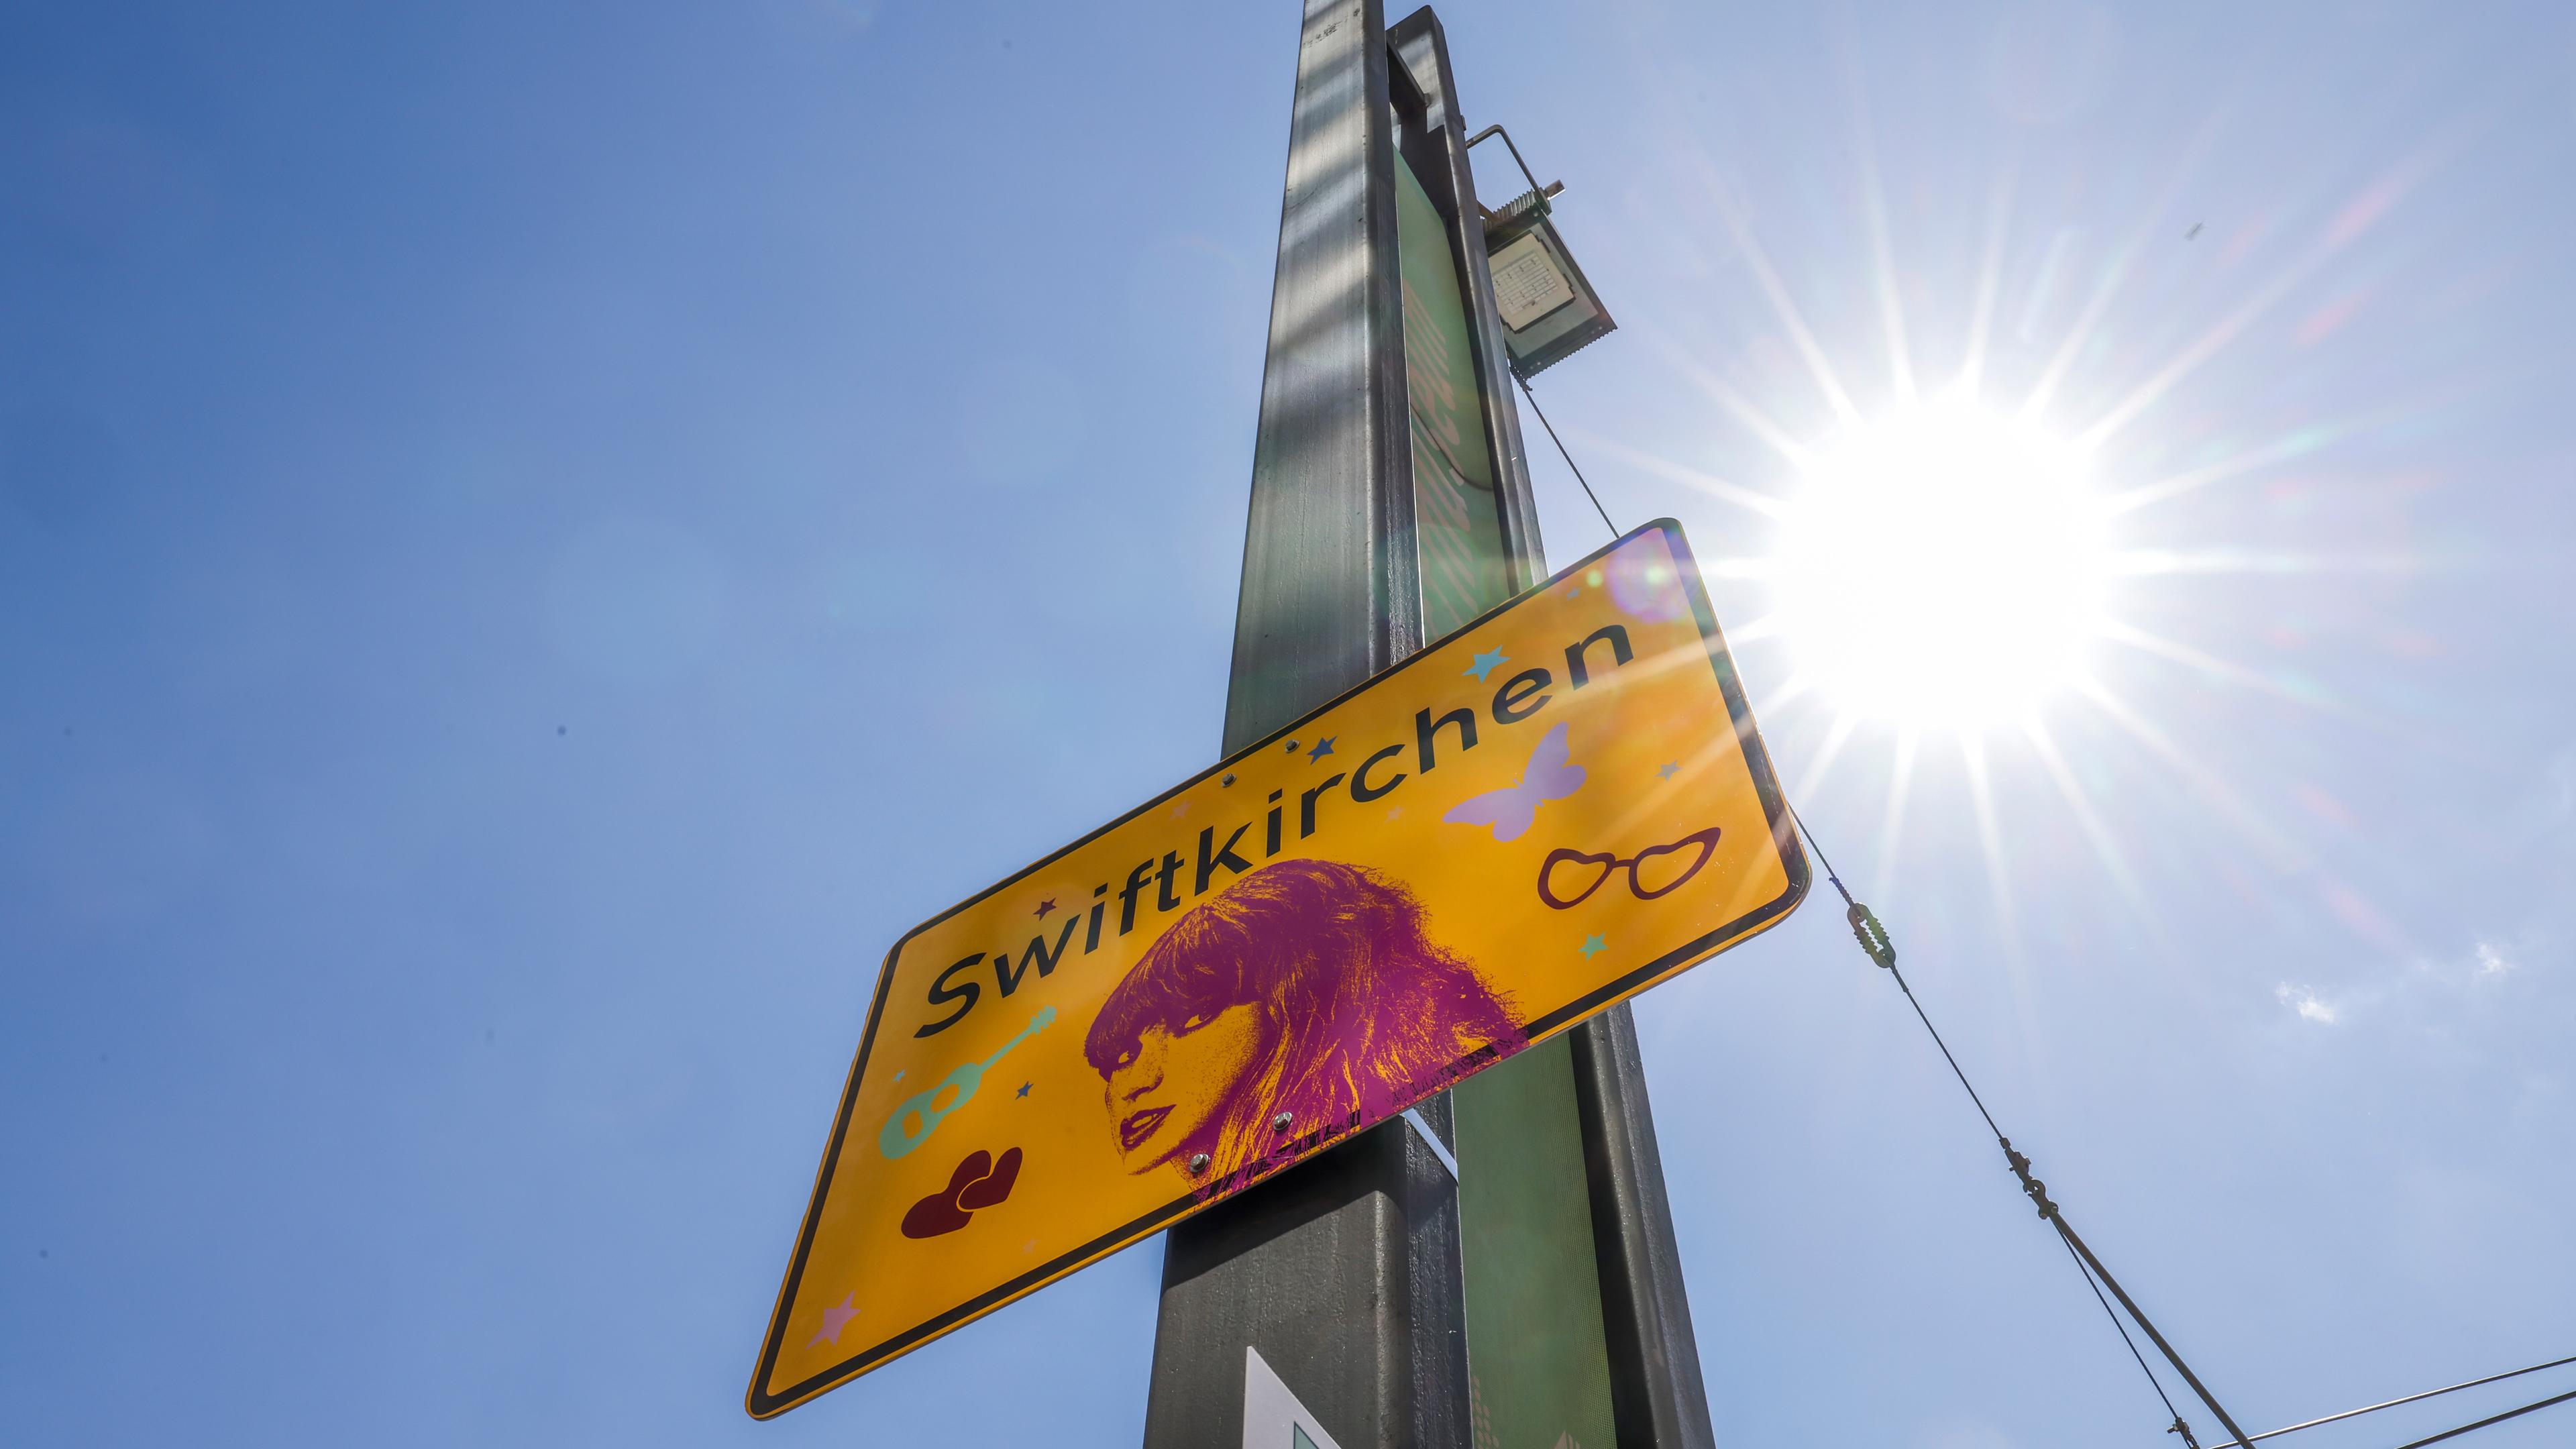 Ein Swiftkirchen-Schild an einem Mast vor der Enthüllung eines Steins auf dem Walk of Fame in Gelsenkirchen. Einen Tag vor dem ersten Deutschland-Konzert der Sängerin Taylor Swift im Rahmen ihrer «The Eras Tour».